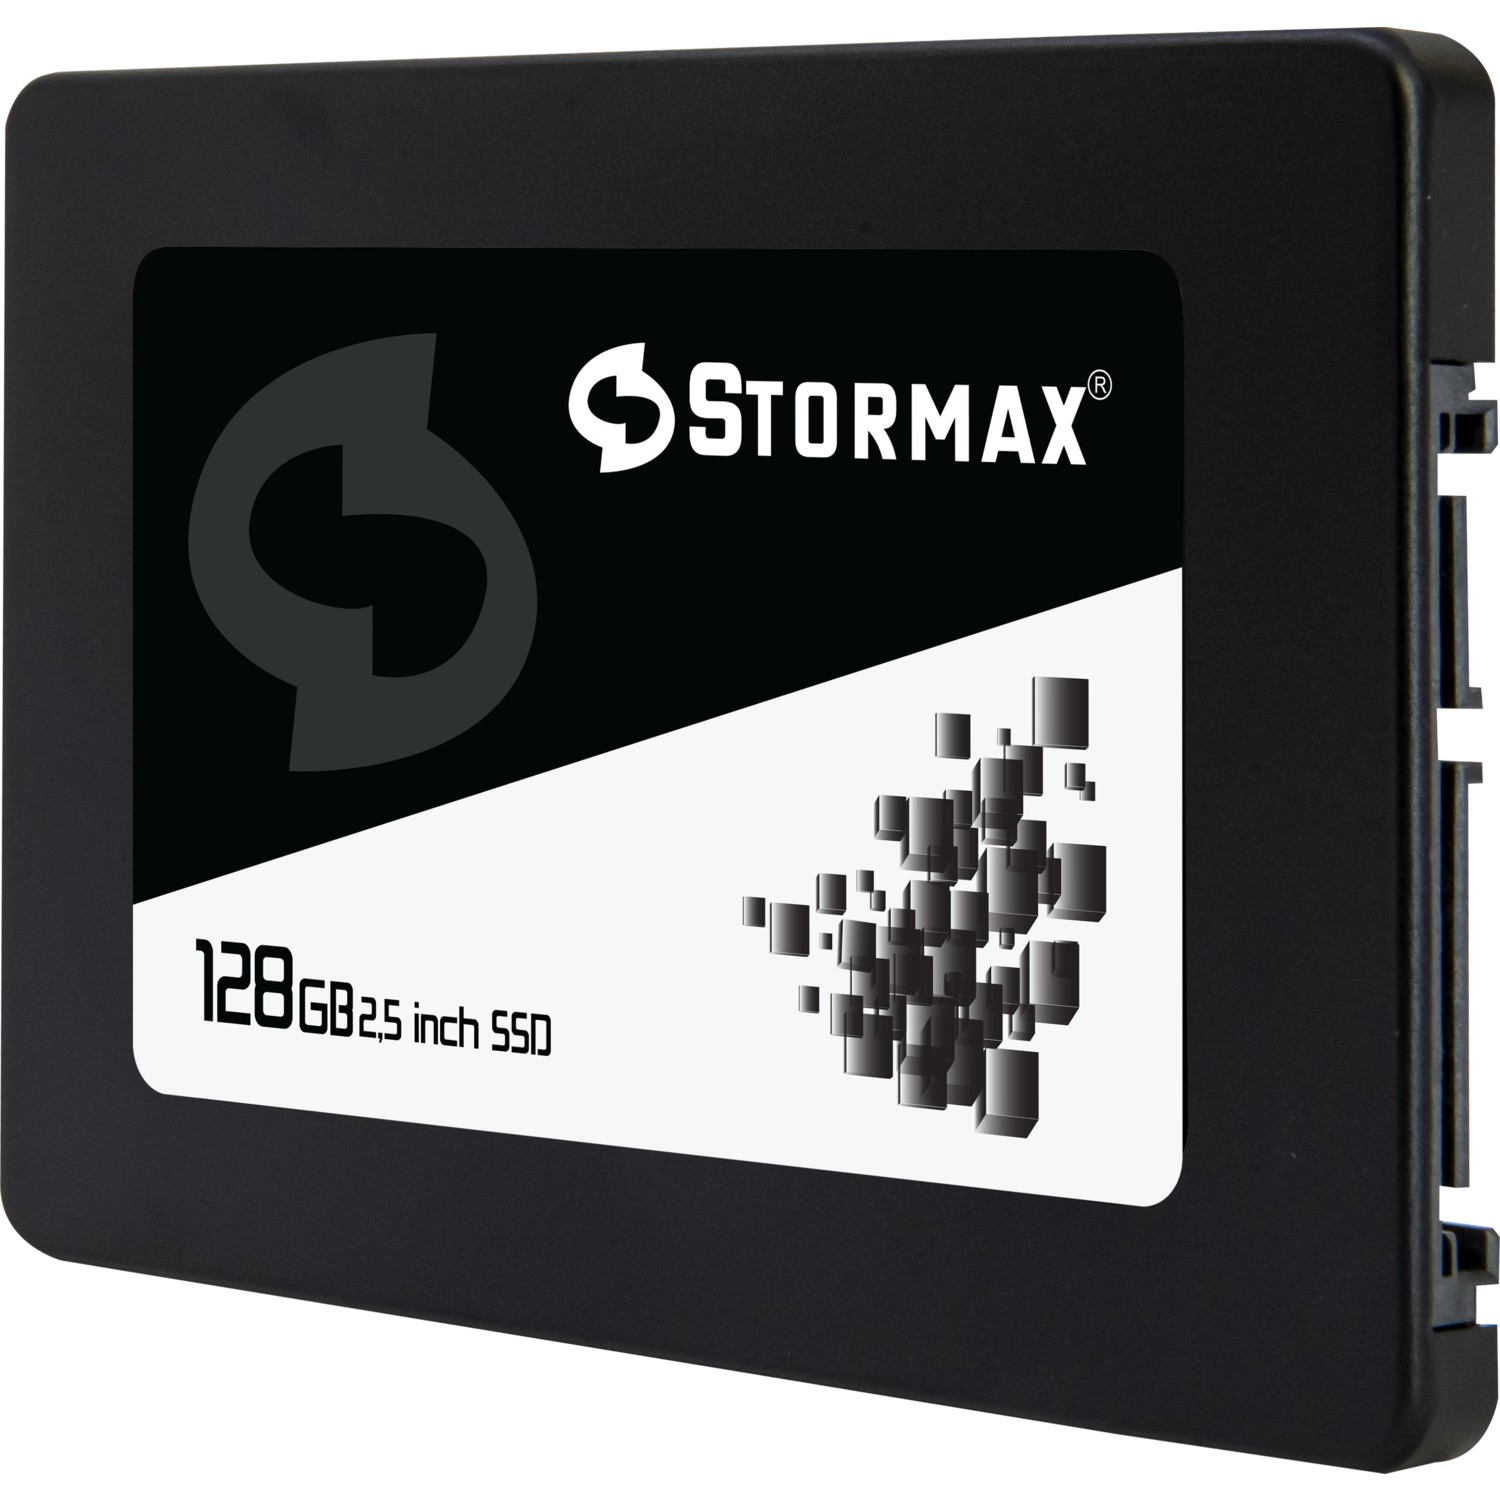 STORMAX BLACK 128GB 550/530MB/s 2.5" SATA3 SSD SMX-SSD30BLCK/128G